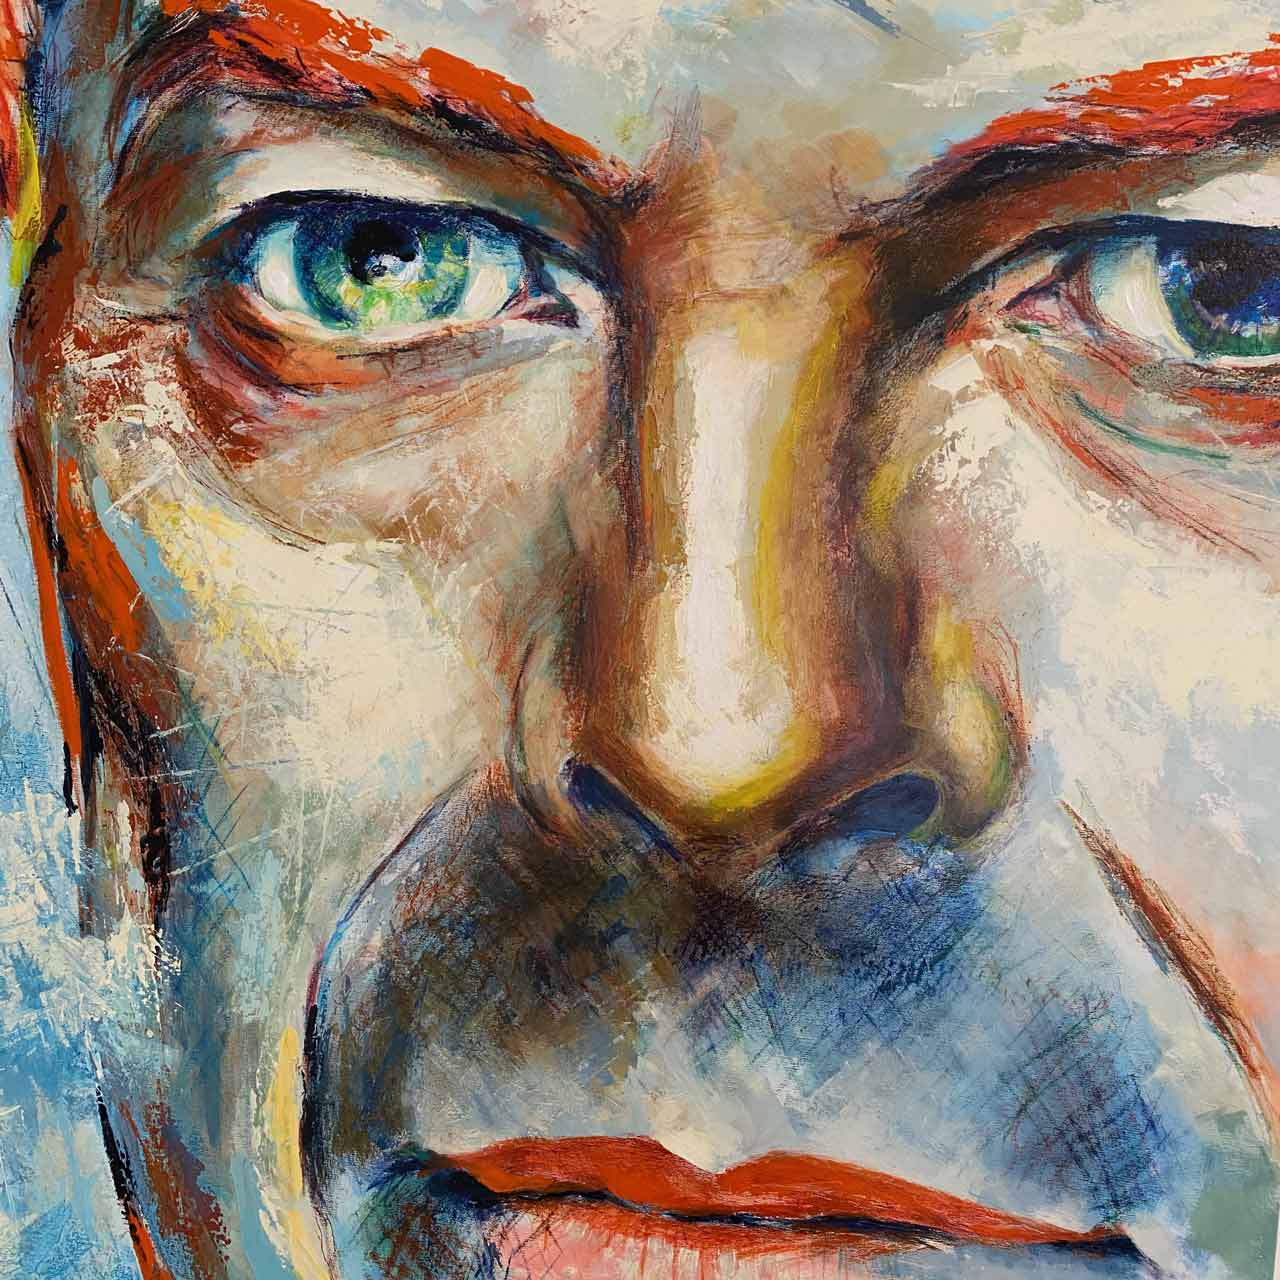 Portræt af David Bowie. Titel: Chameleon. Format: 90 x 120 cm. Mixed media malet af portrætmaler Peter Simonsen i 2020